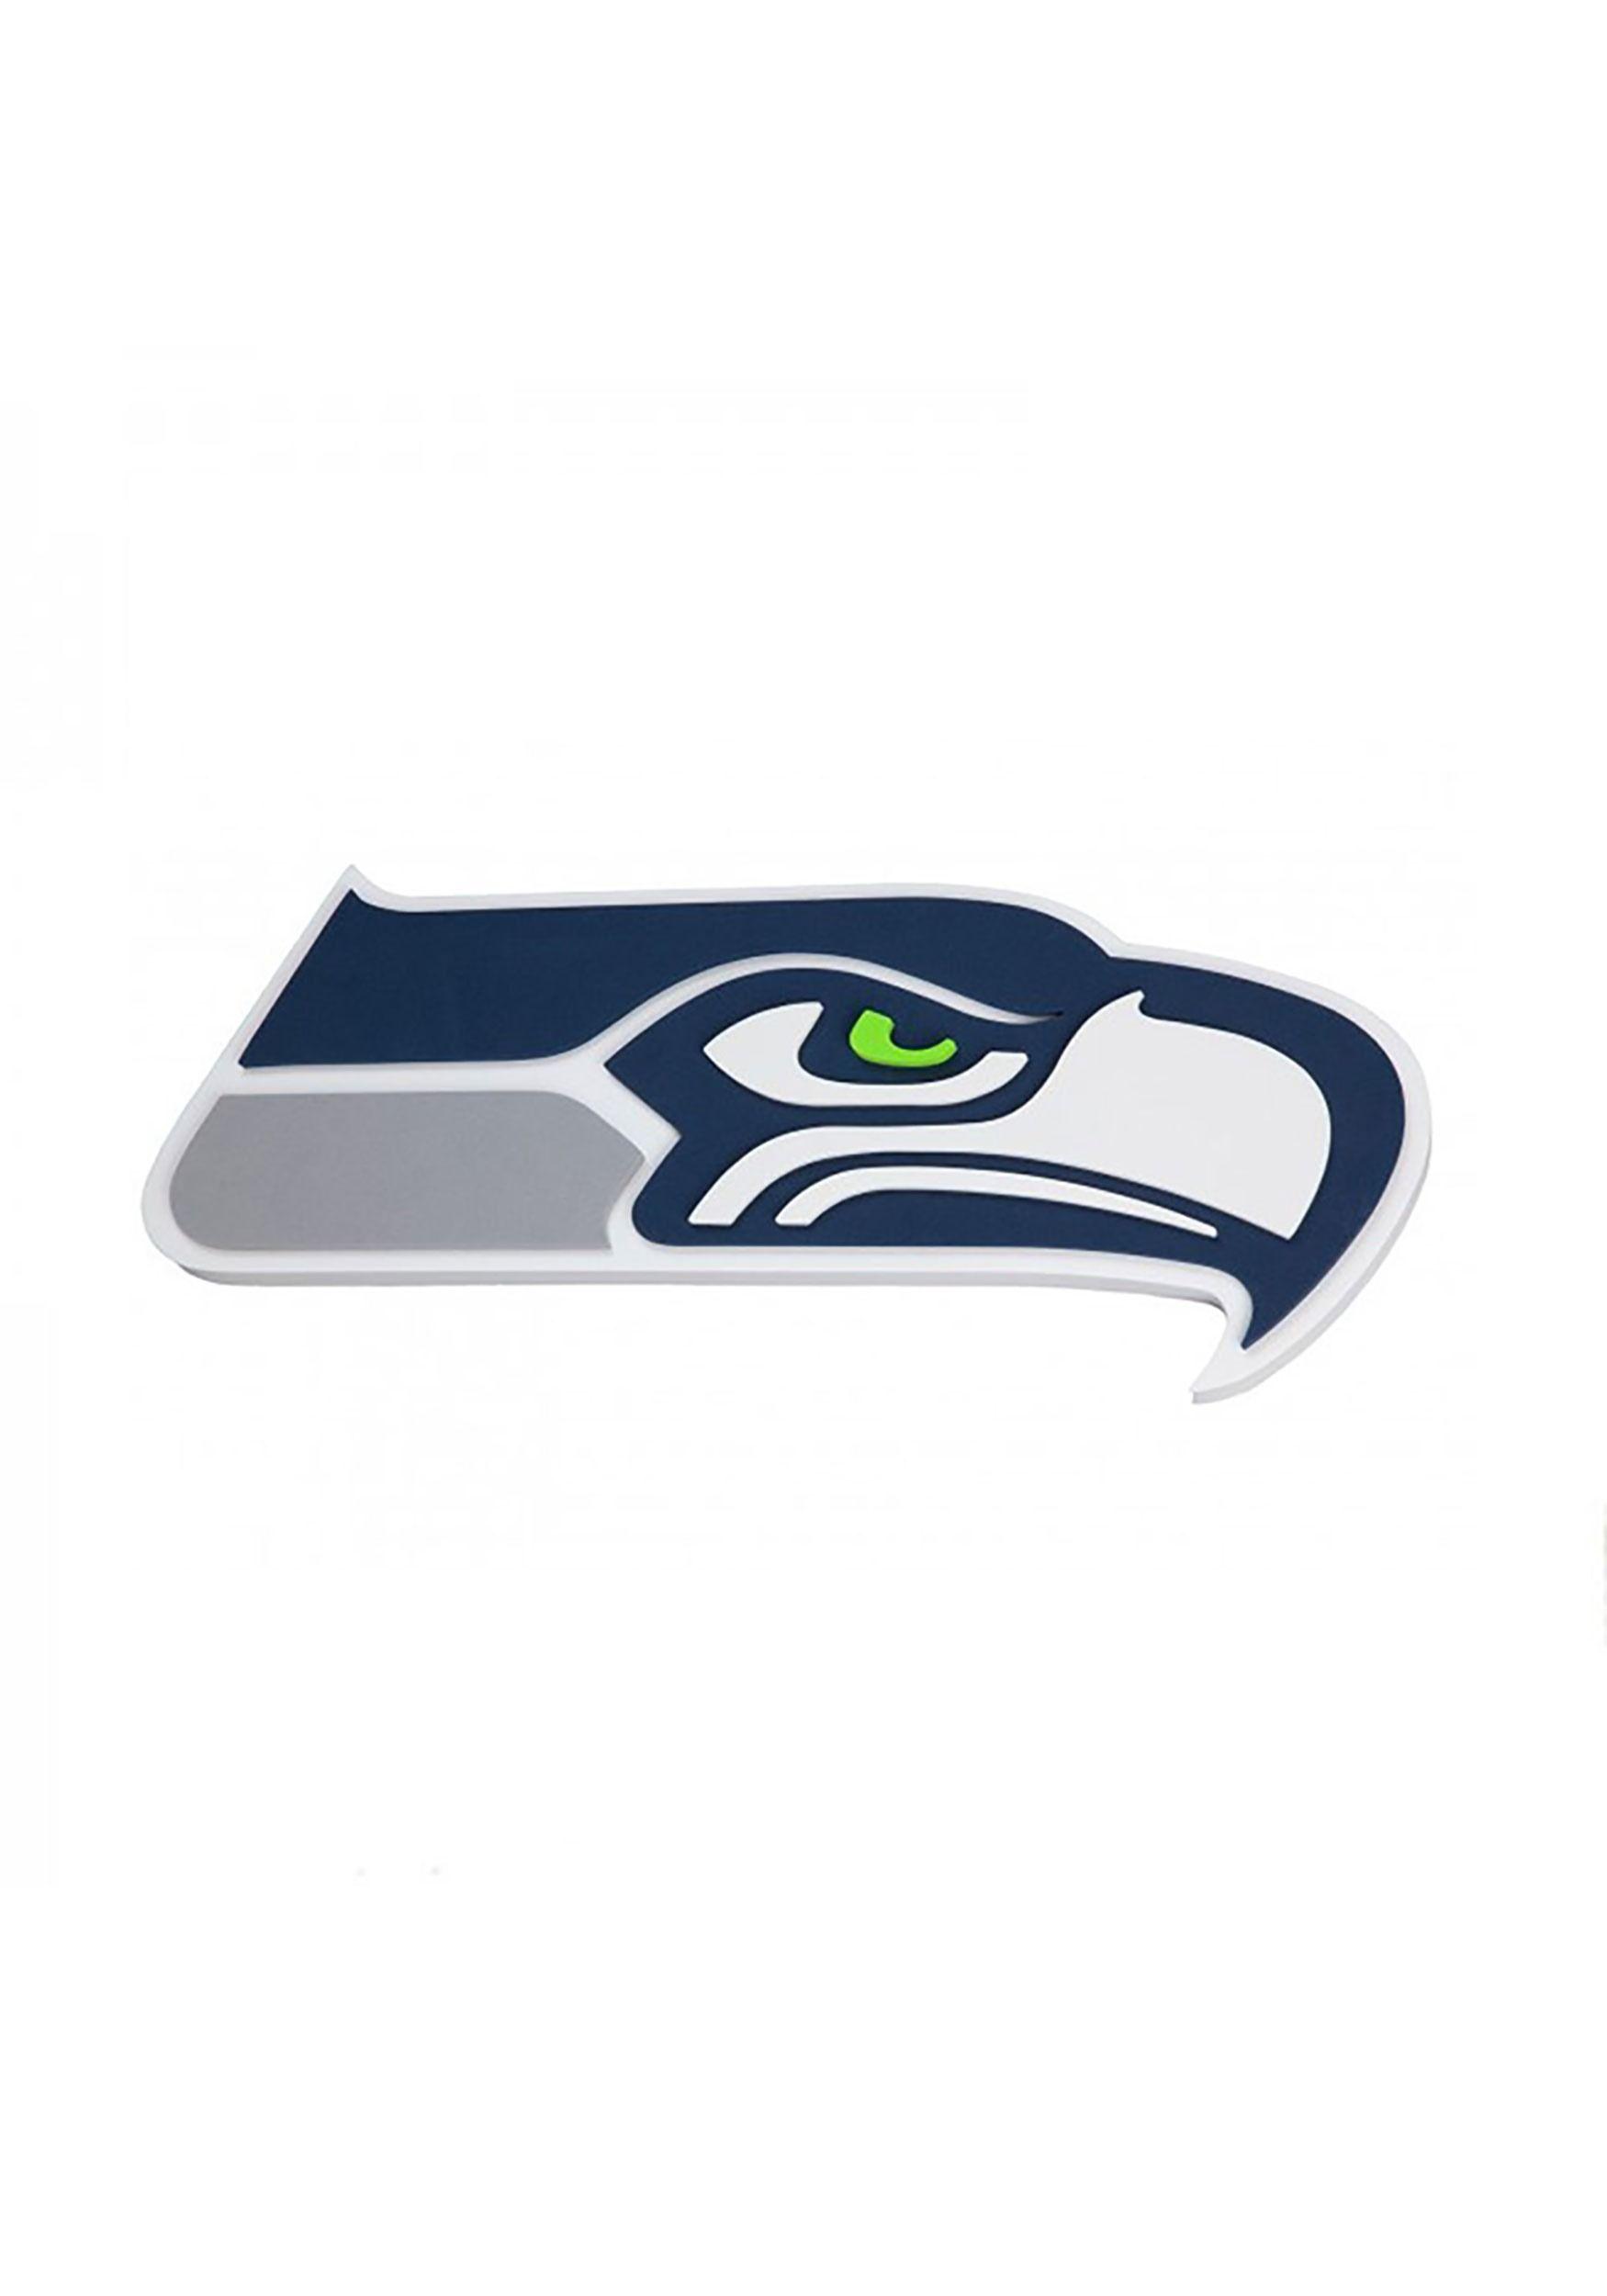 Seawawks Logo - Seattle Seahawks NFL Logo Foam Sign